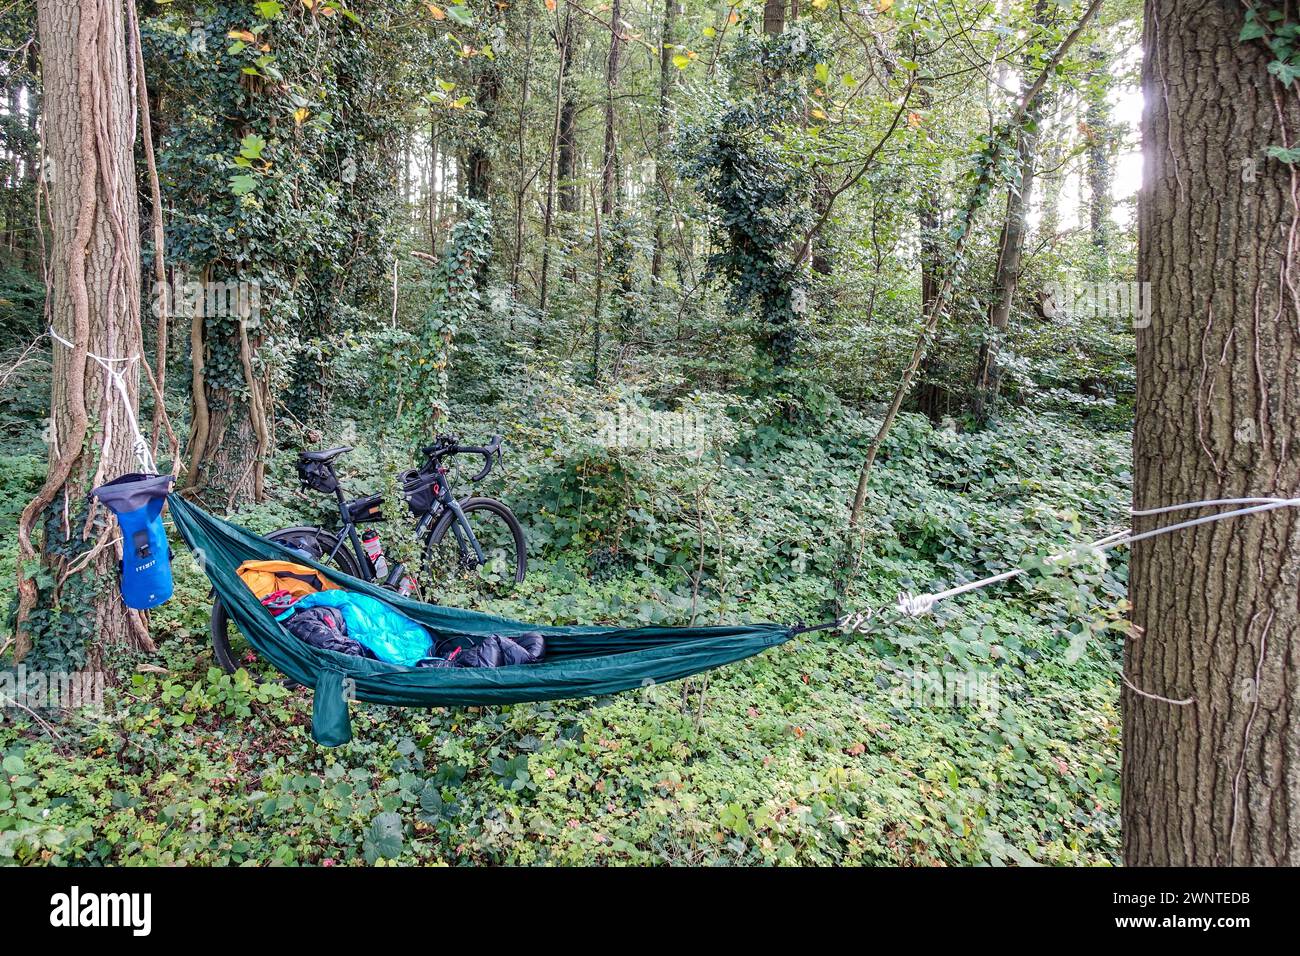 Fahrrad- und Campingausrüstung in einer Waldlandschaft mit einer Hängematte zwischen Bäumen und einem Fahrrad, das sich auf einem Baum stützt Stockfoto